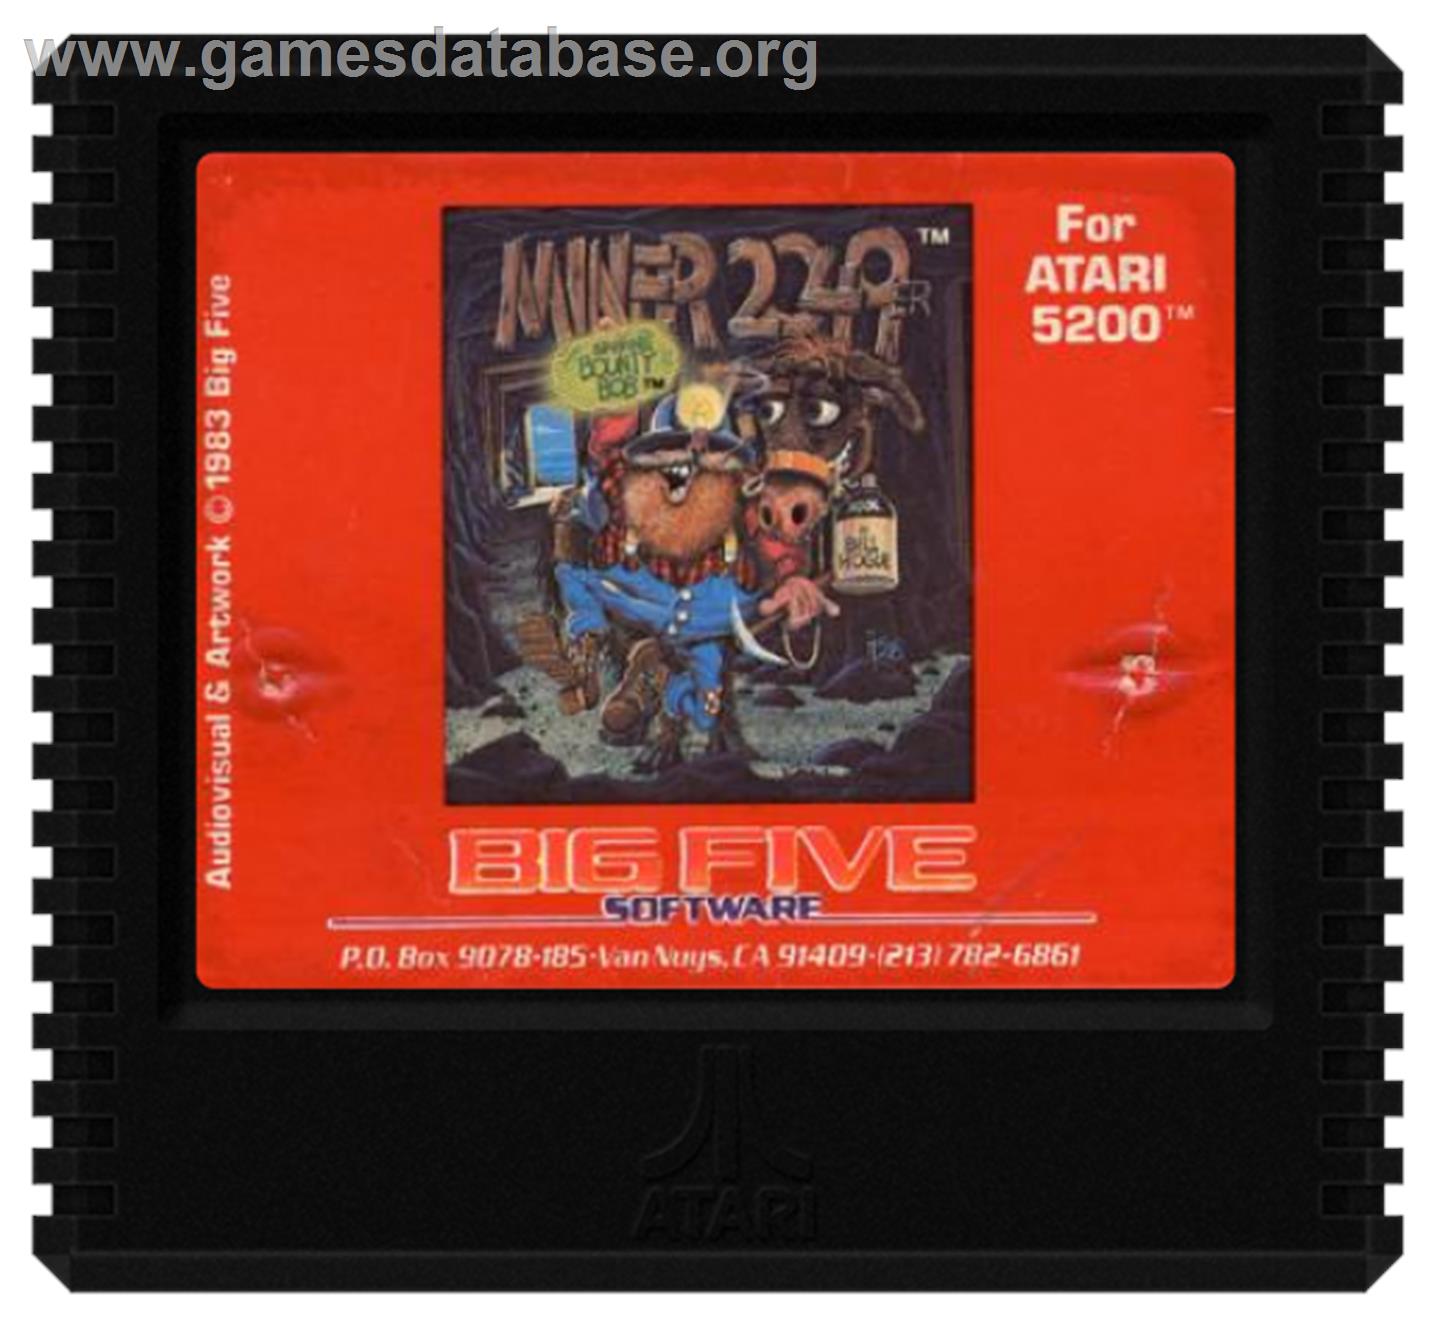 Miner 2049er - Atari 5200 - Artwork - Cartridge